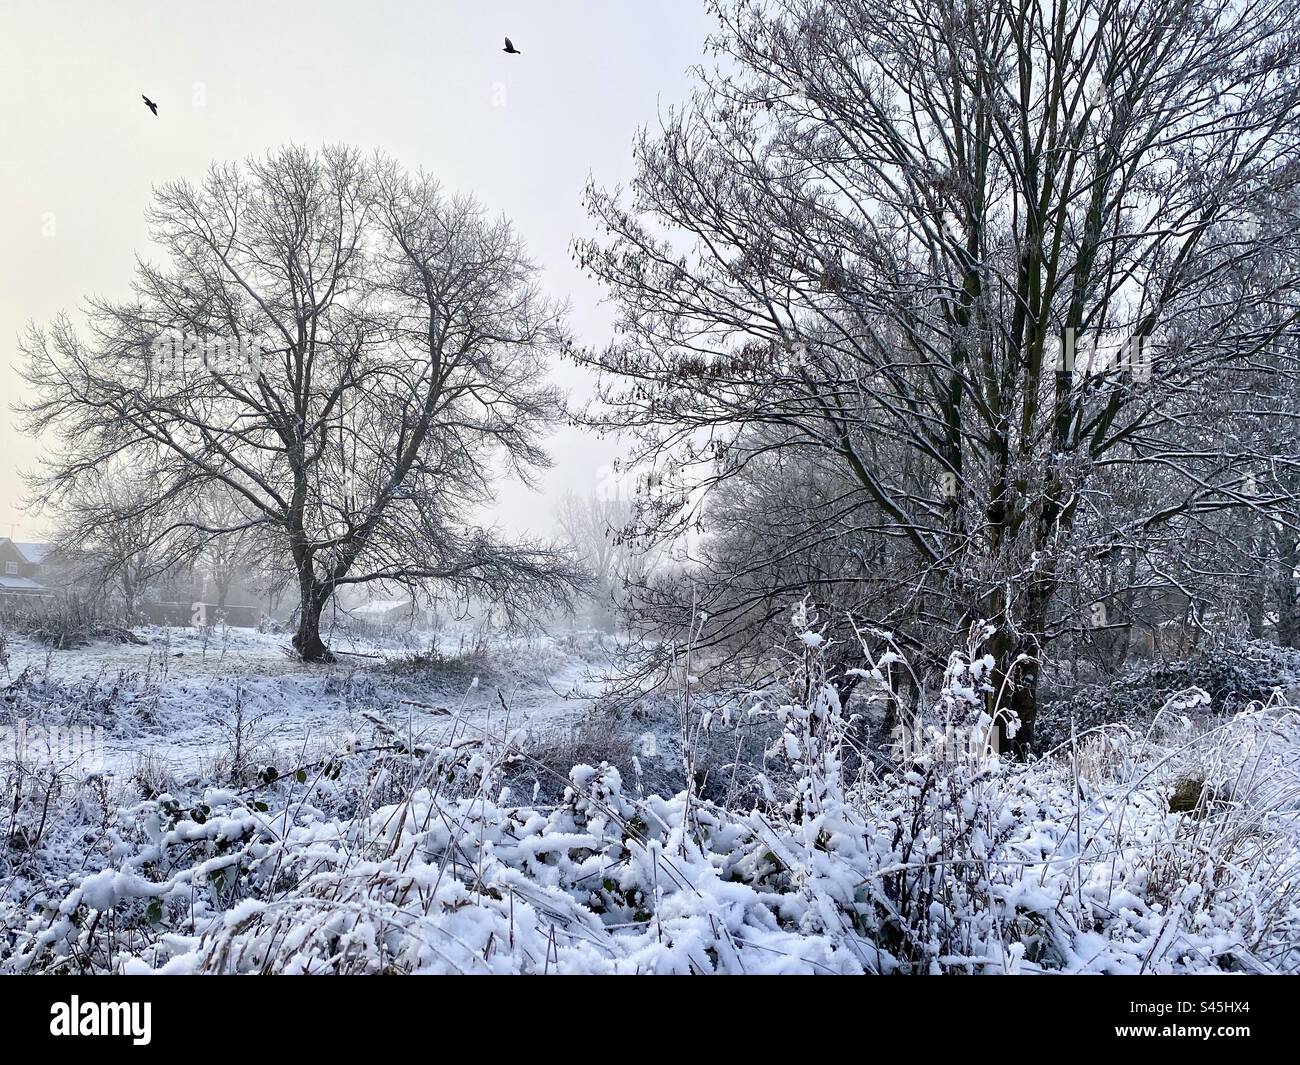 Eine kalte, aber wunderschöne Winterszene nach heftigem Schneefall in der englischen Landschaft im Winter Stockfoto